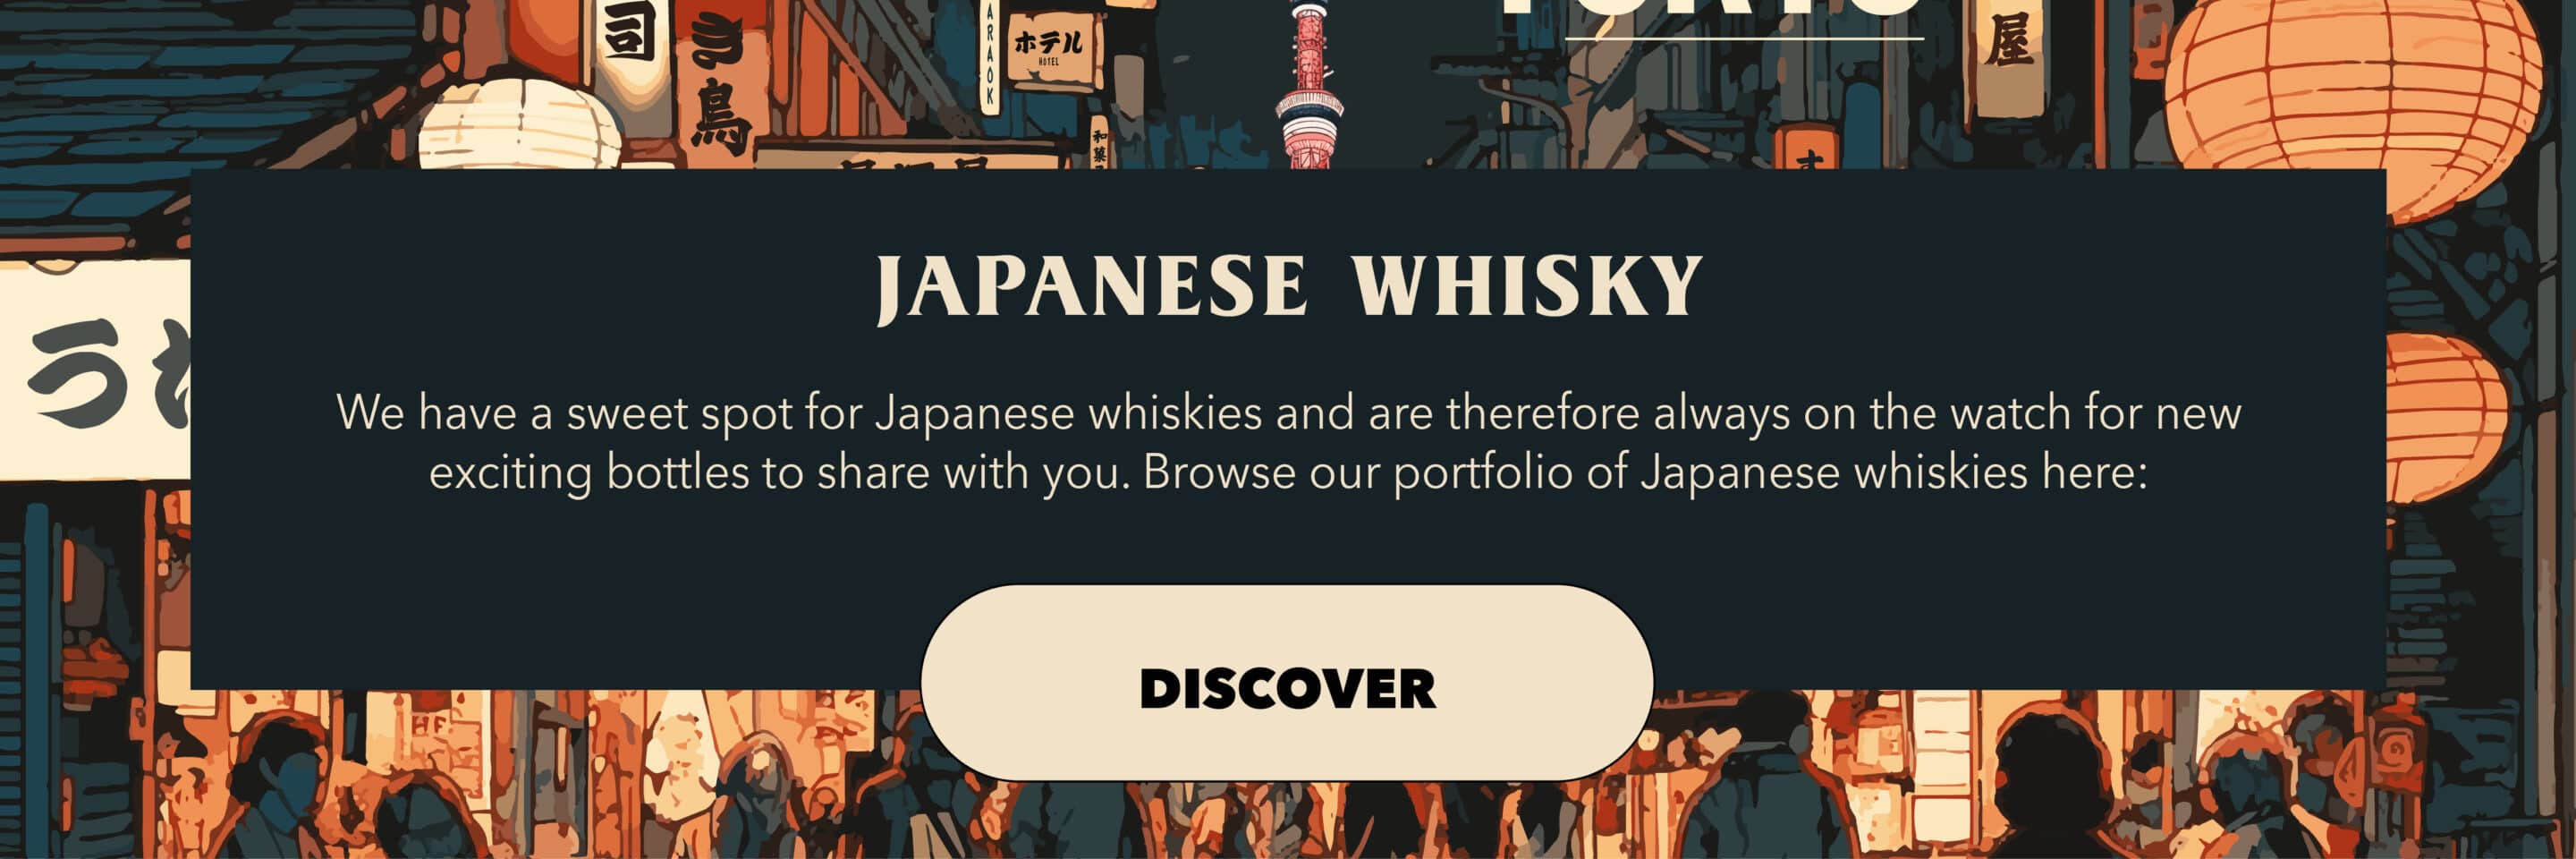 japanese whisky